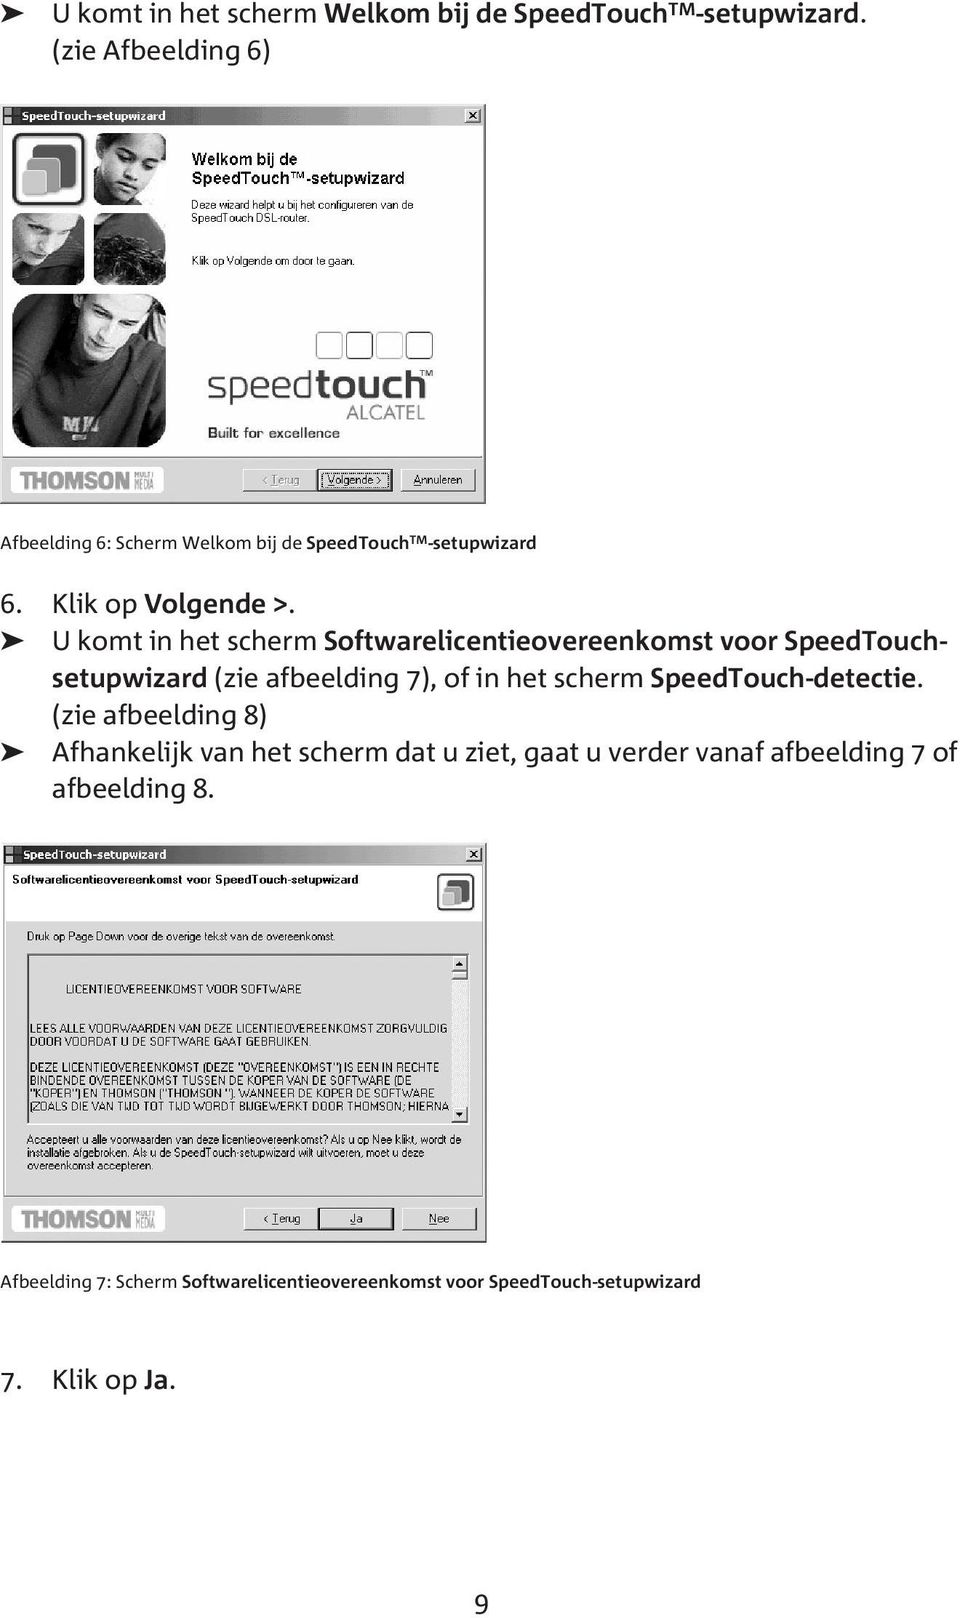 U komt in het scherm Softwarelicentieovereenkomst voor SpeedTouchsetupwizard (zie afbeelding 7), of in het scherm